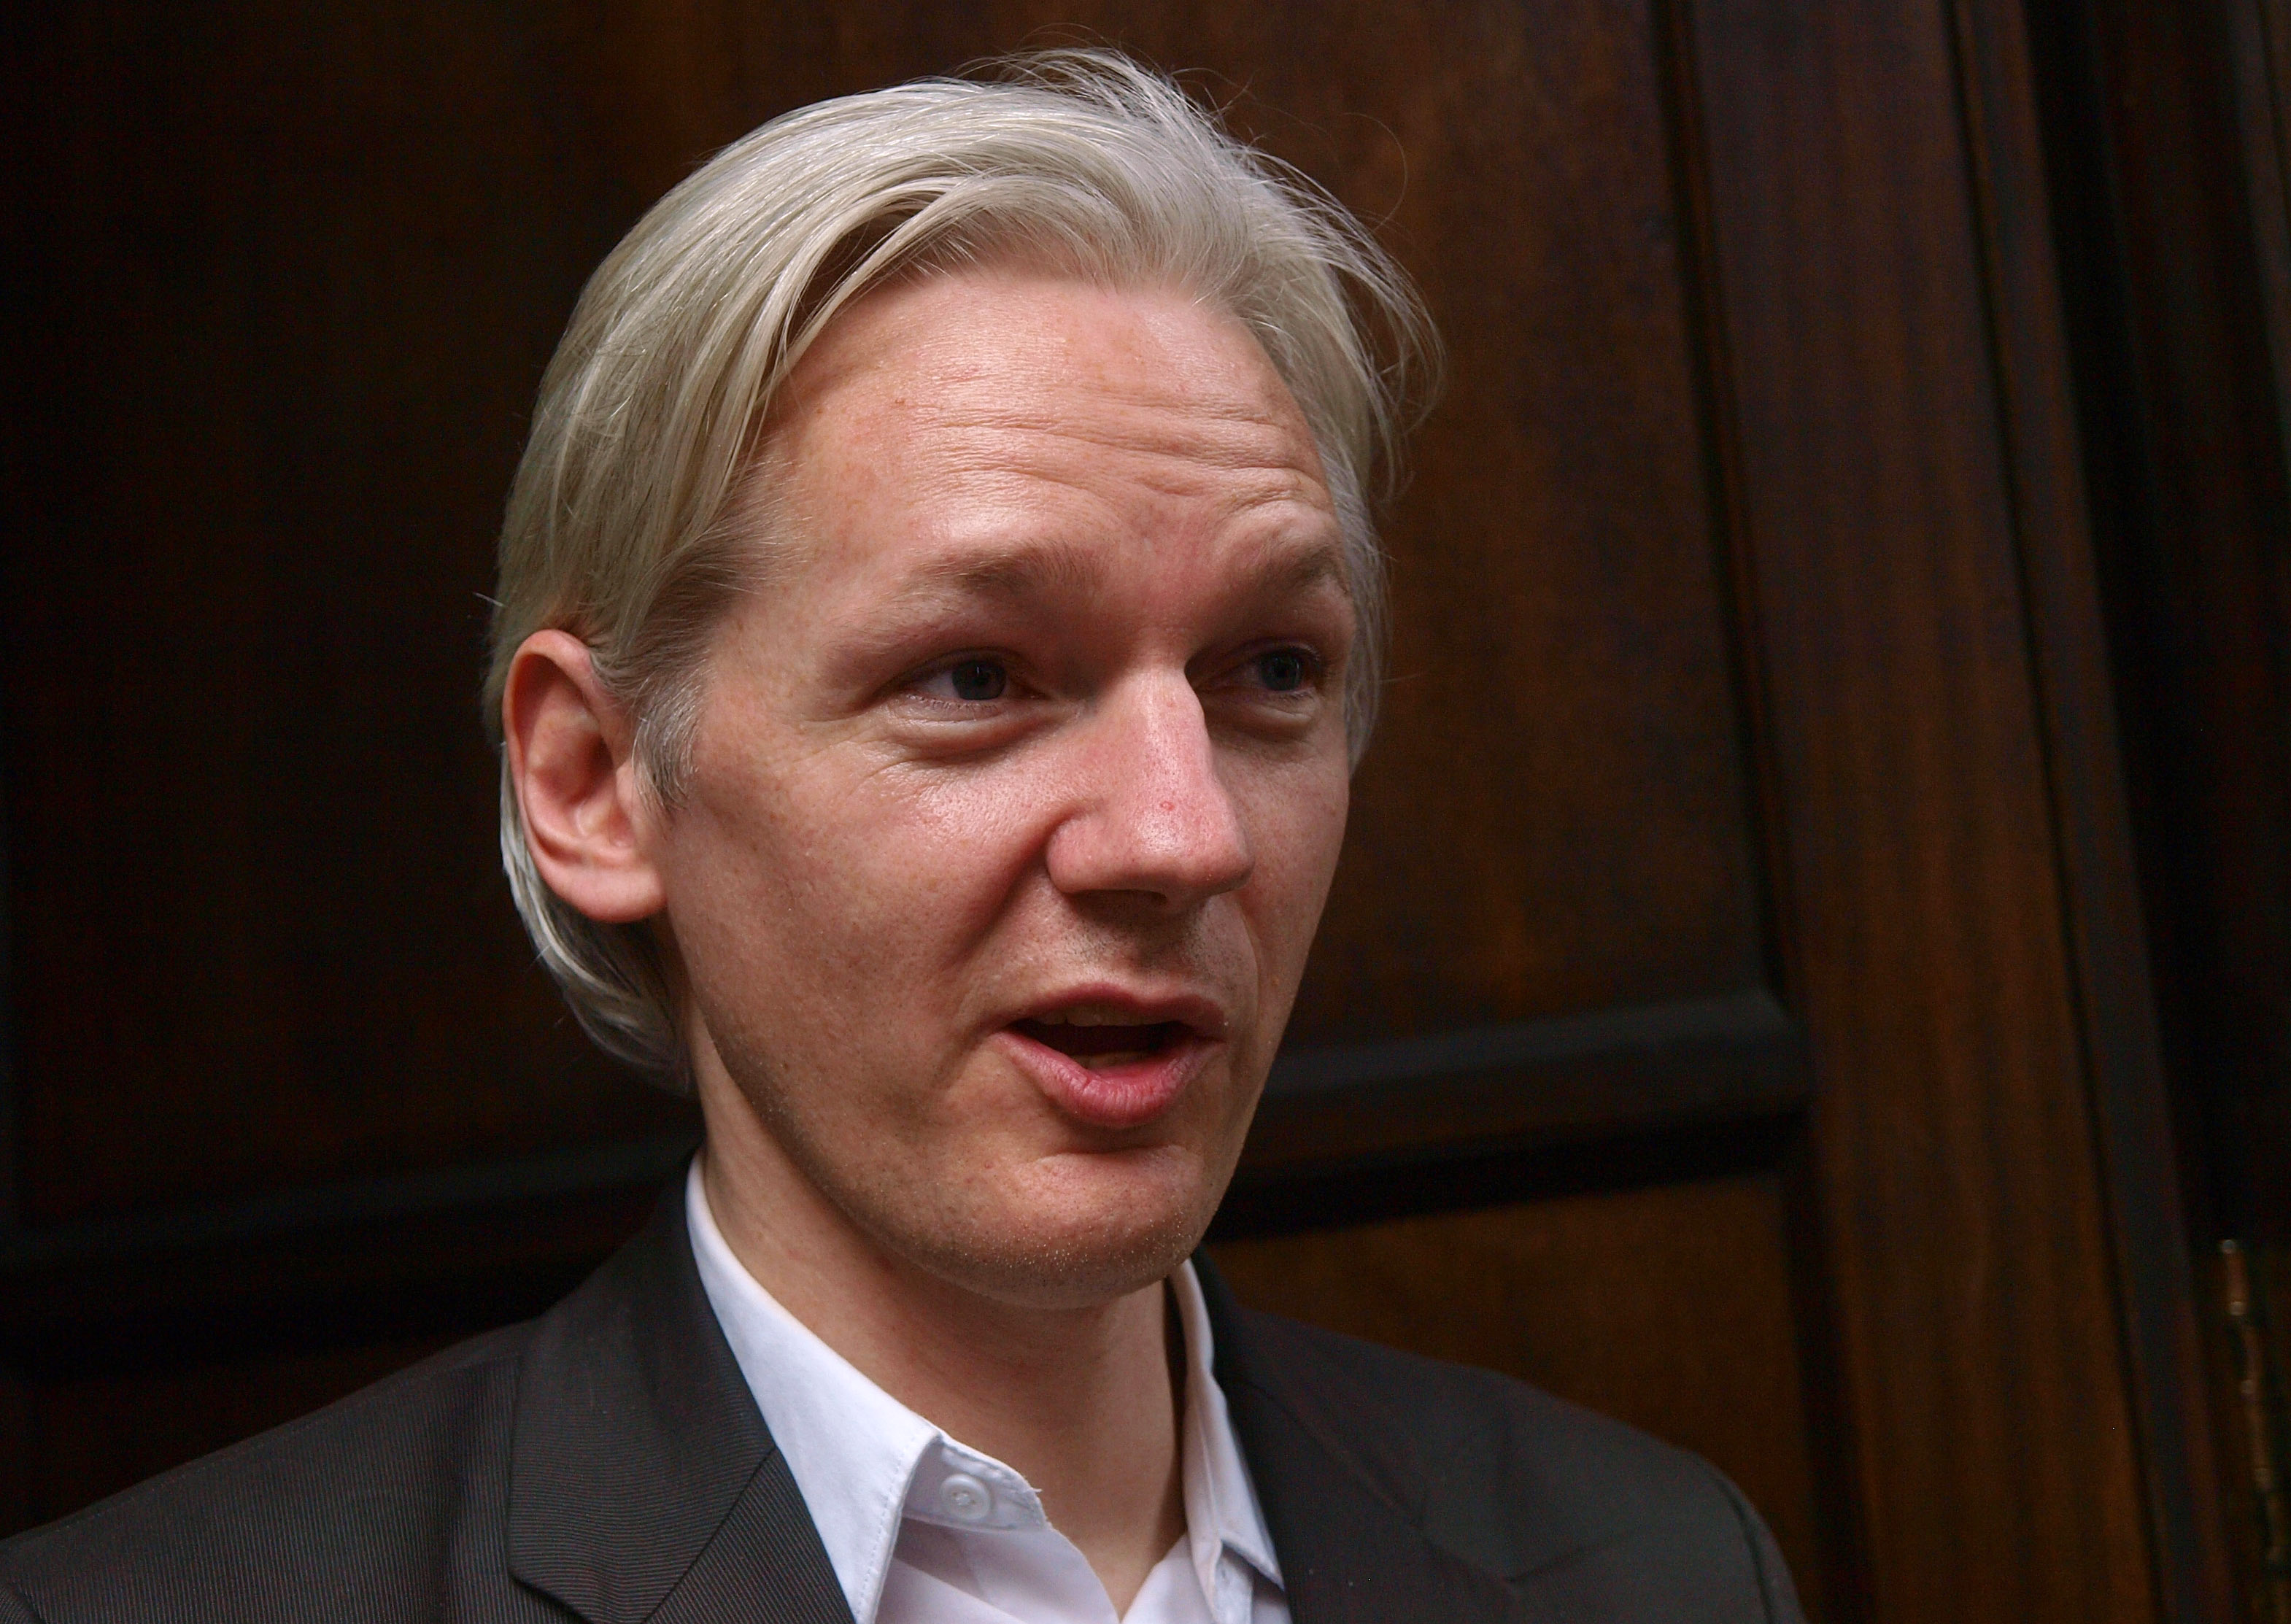 Det var efter en konflikt med Julian Assange som Domscheit-Berg lämnade organisationen.